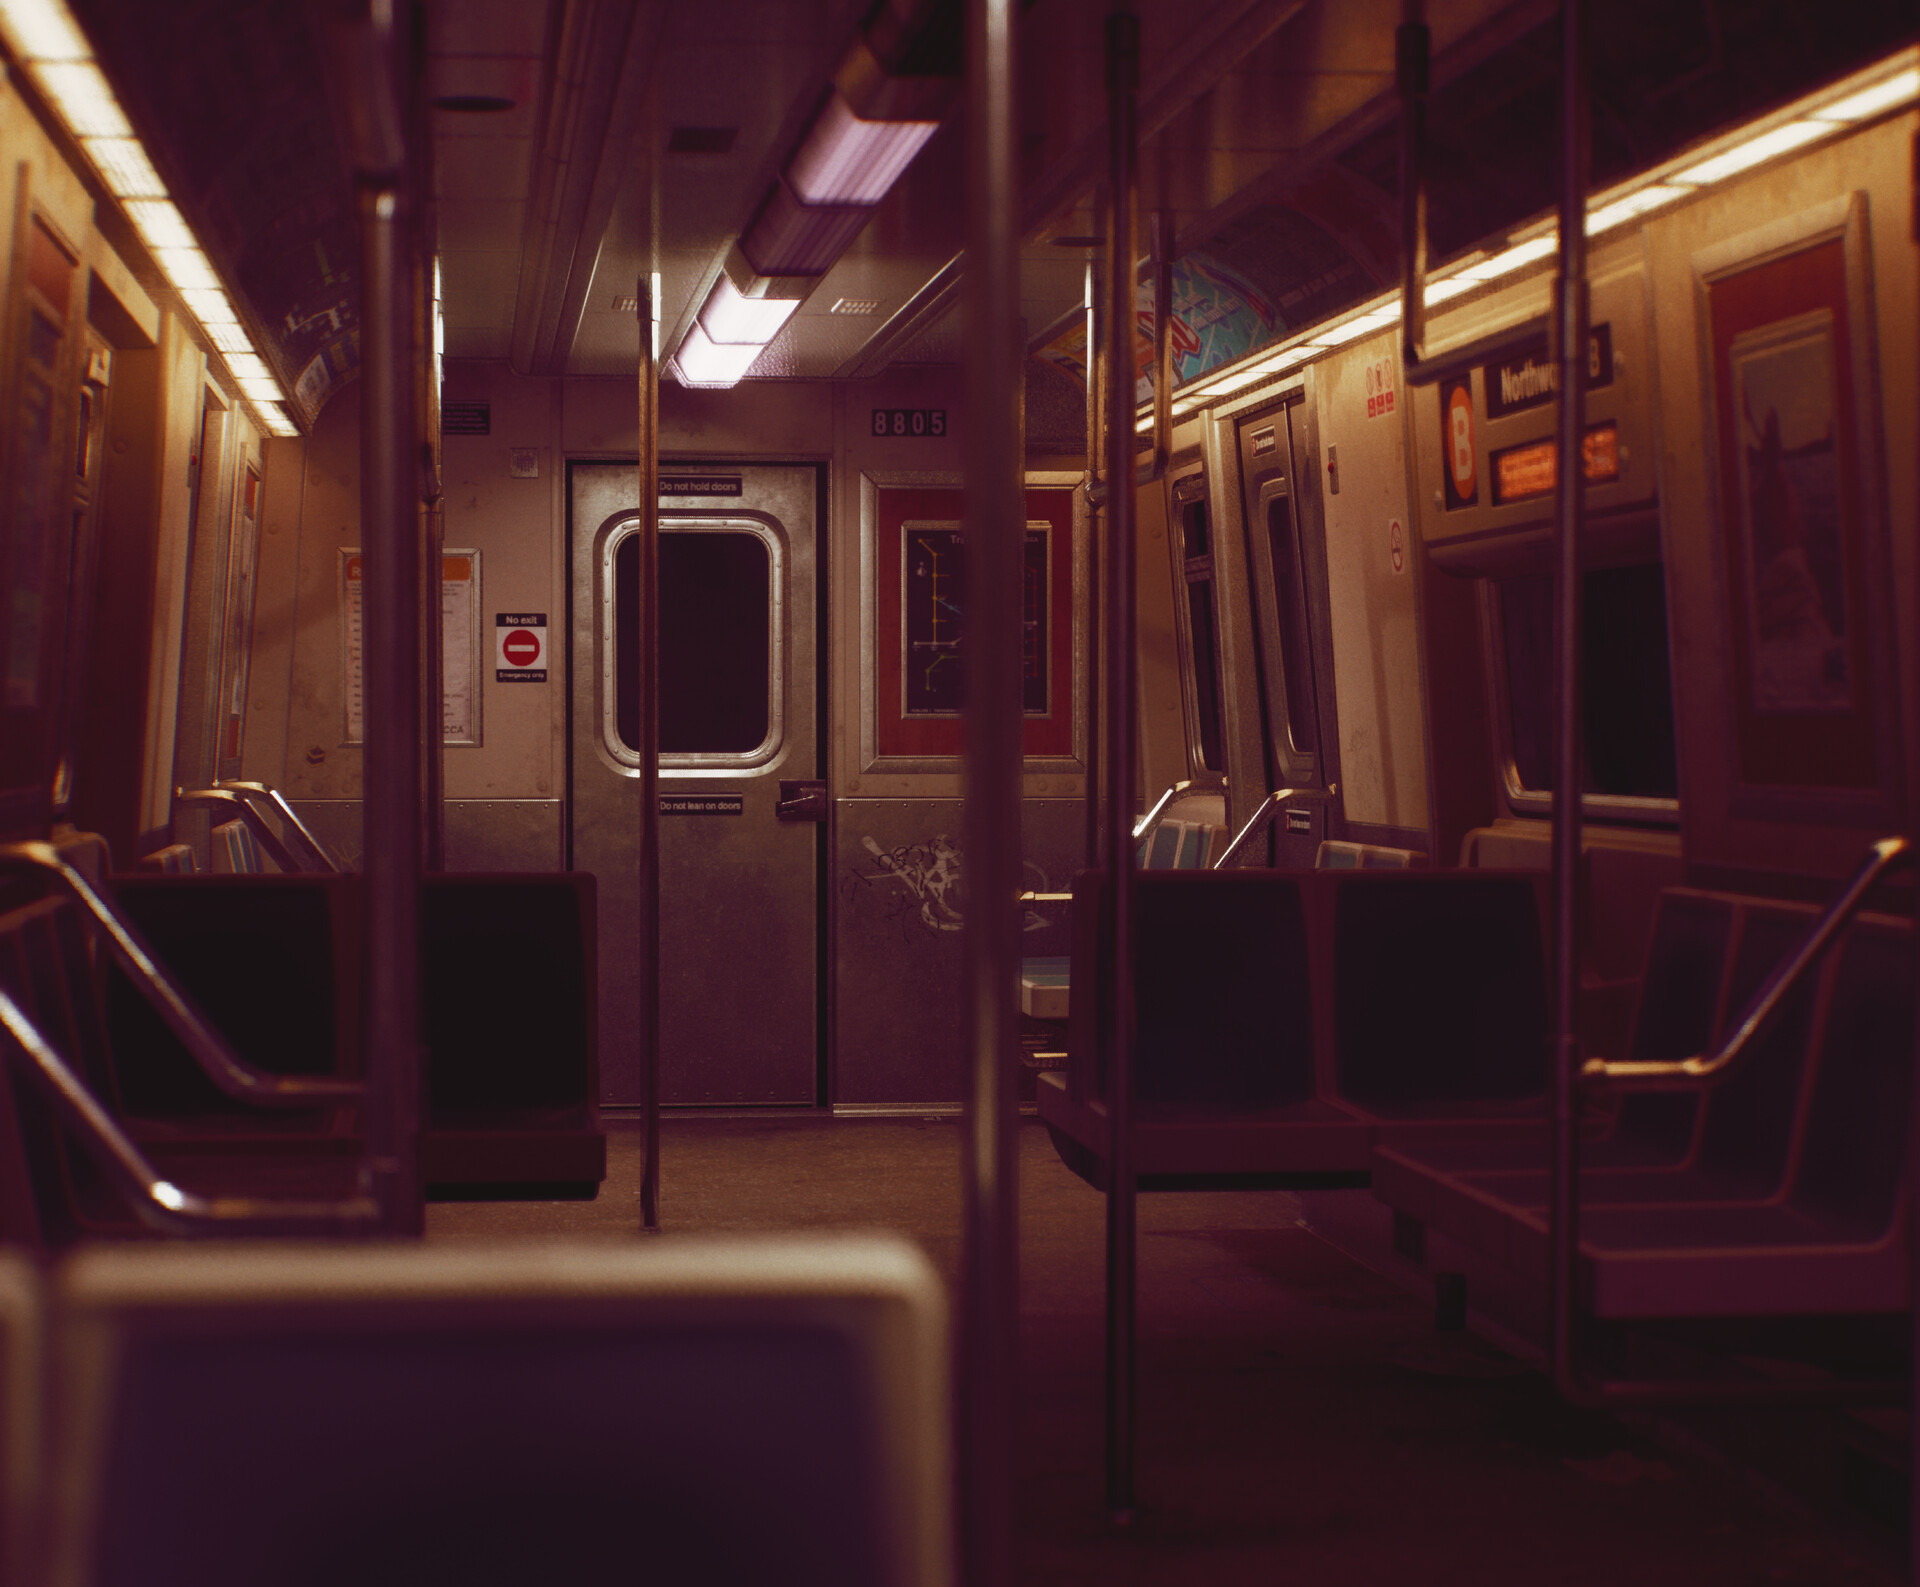 ArtStation - Subway Car Lighting Excercise